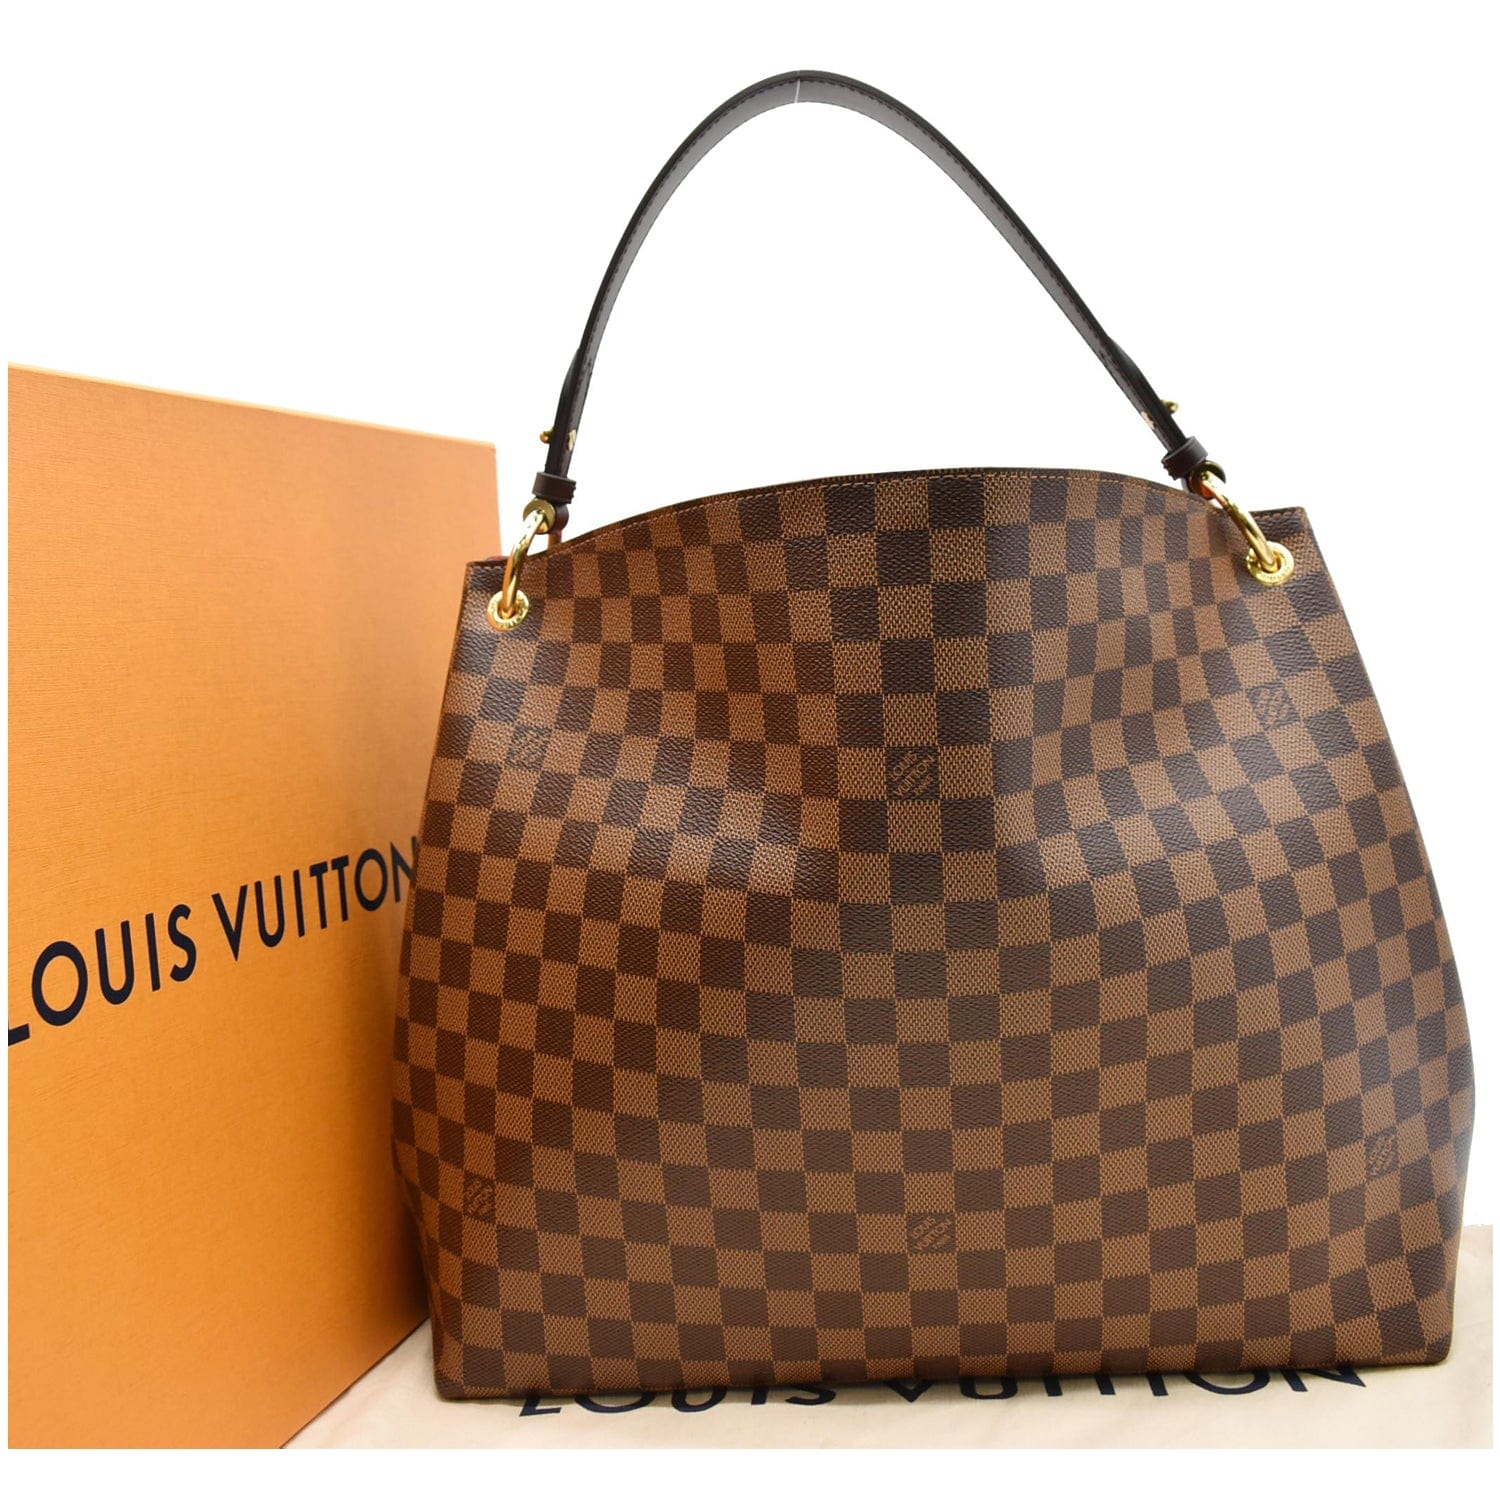 💎✨Authentic✨💎 Louis Vuitton Delightful MM Damier Ebene